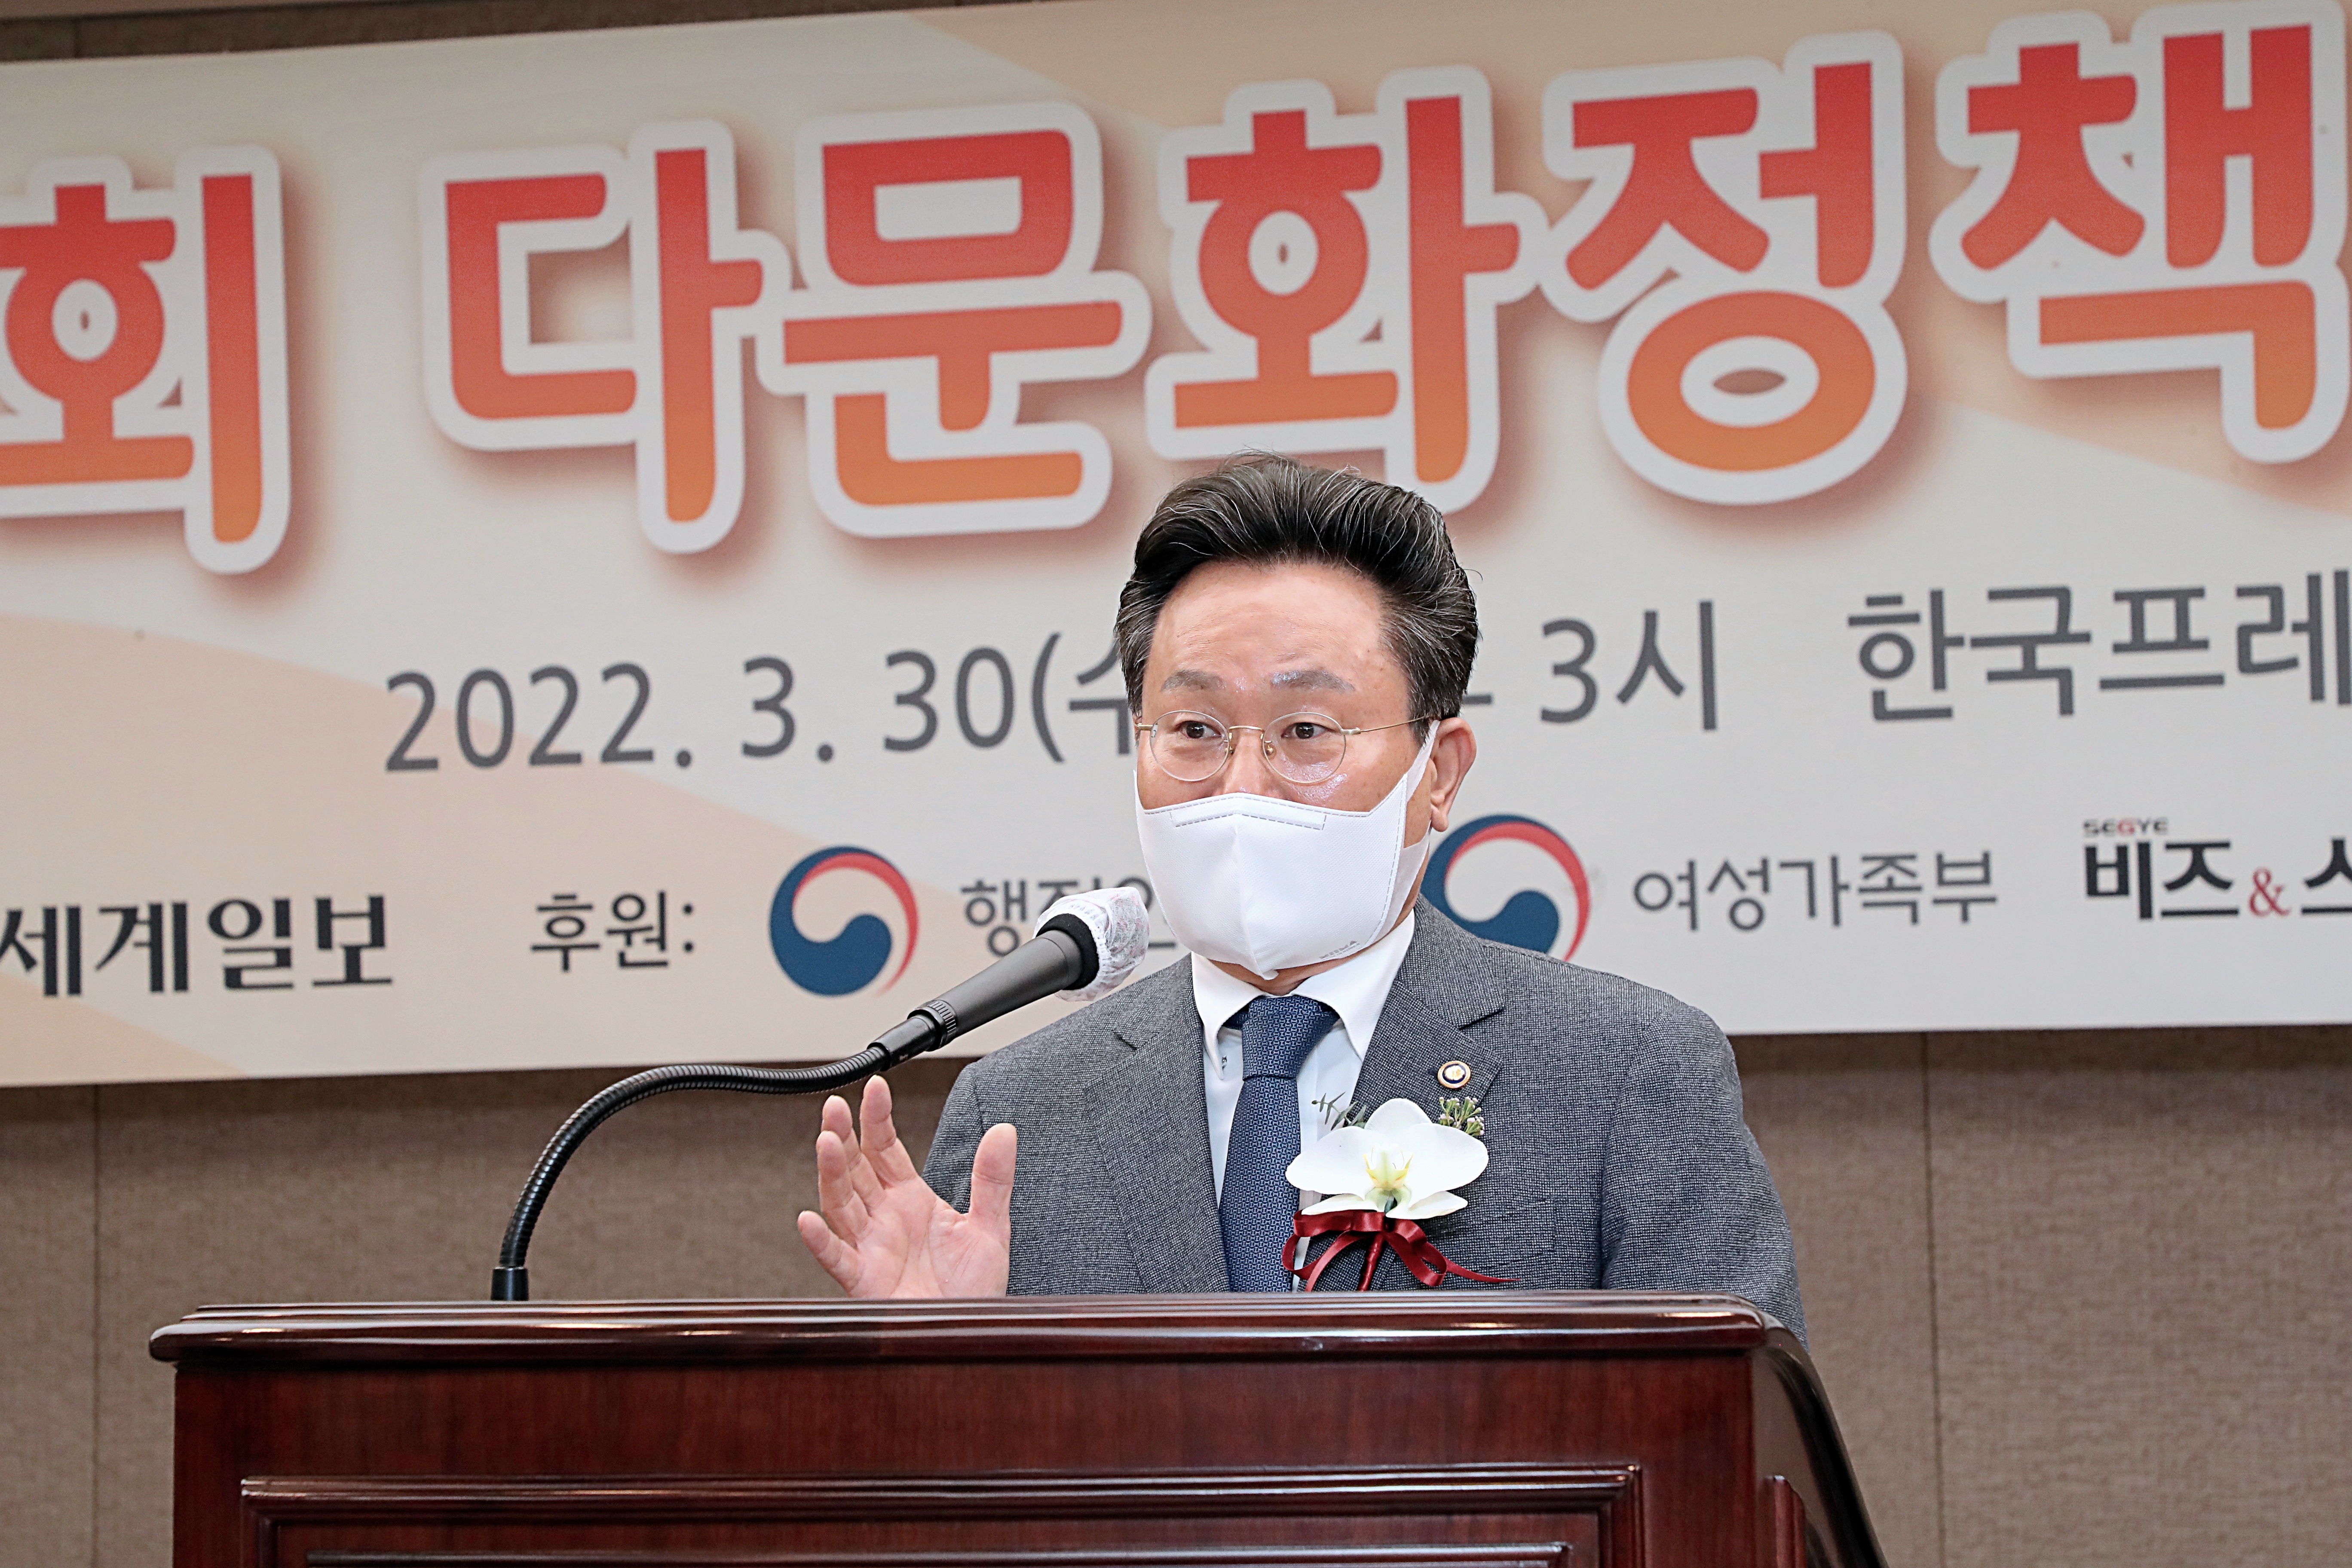 고규창 행정안전부 차관이 30일 오후 서울시 중구 한국프레스센터 19층에서 열린 '제9회 다문화정책대상 시상식'에 참석해 축사를 하고 있다.